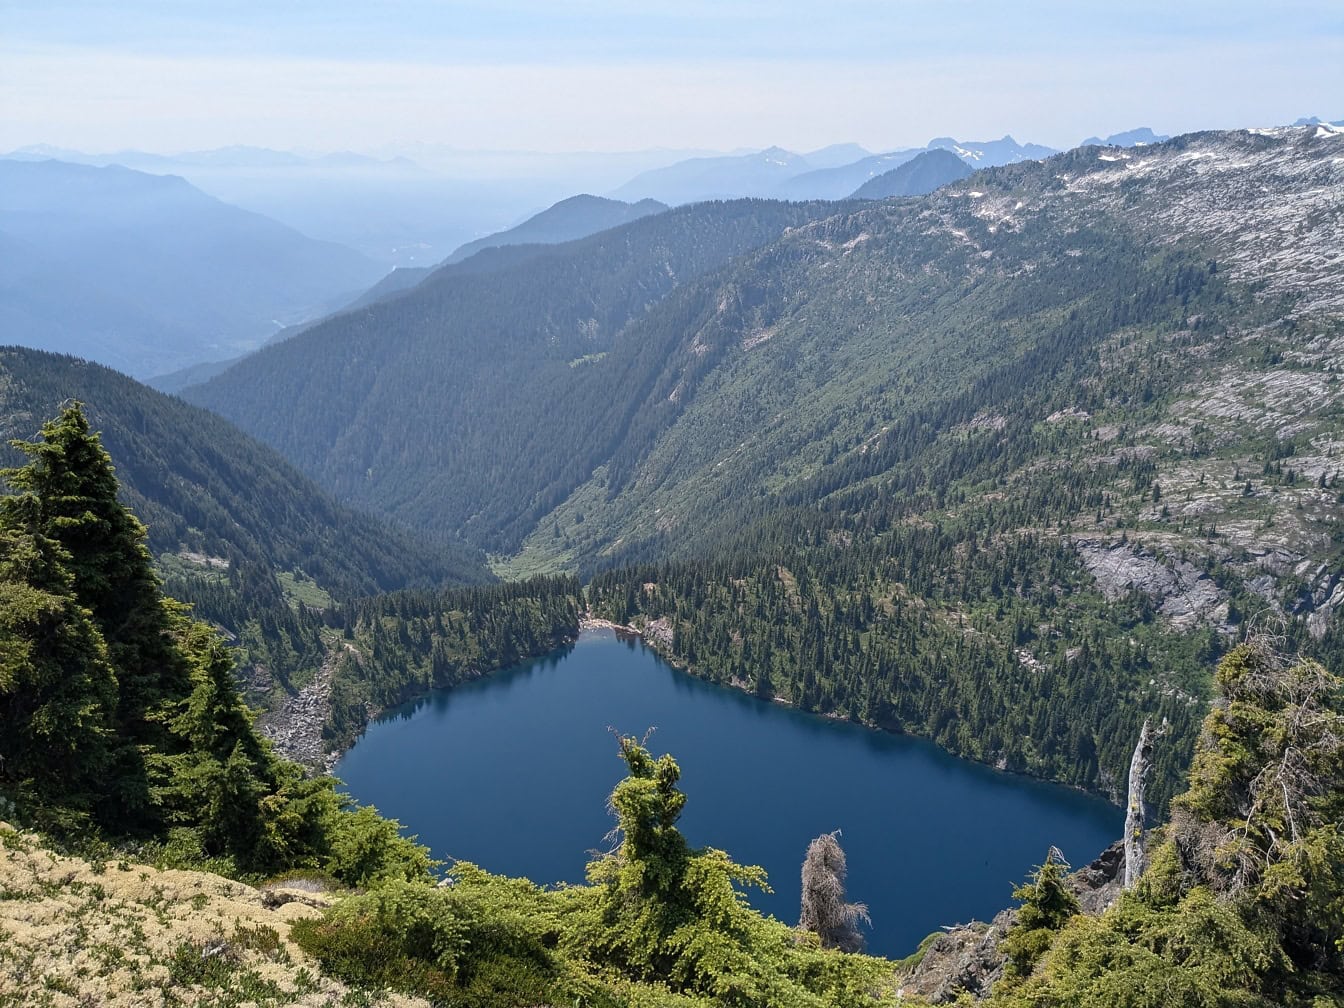 Krásne breh jazera Thornton s horami v pozadí v národnom parku North Cascades vo Washingtone